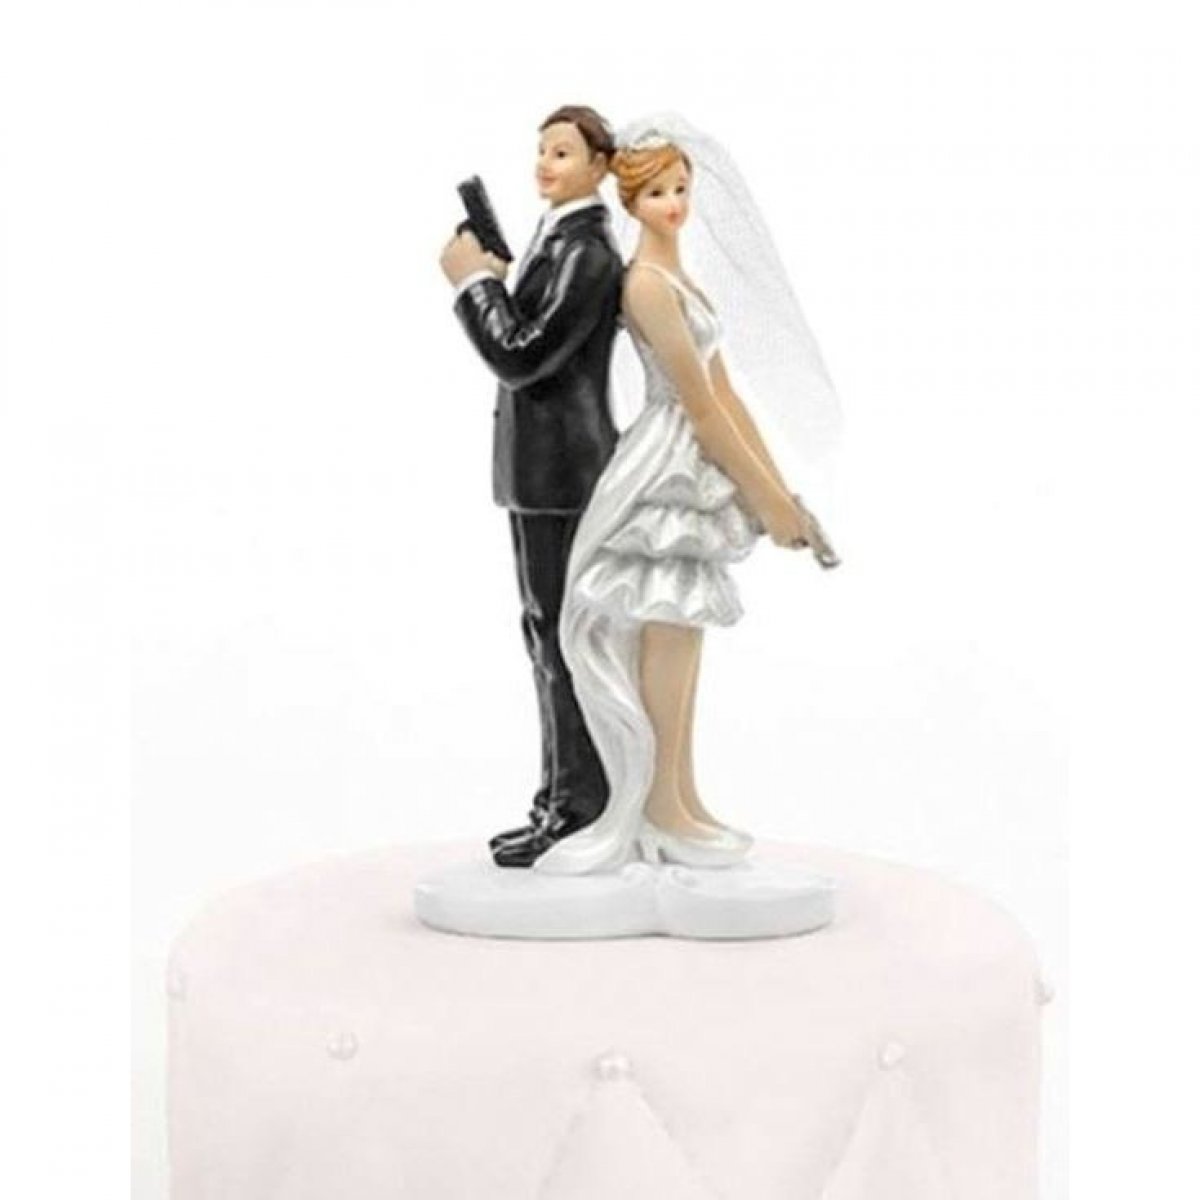  Sujet mariage - Couple de mariés - Agents Secrets 